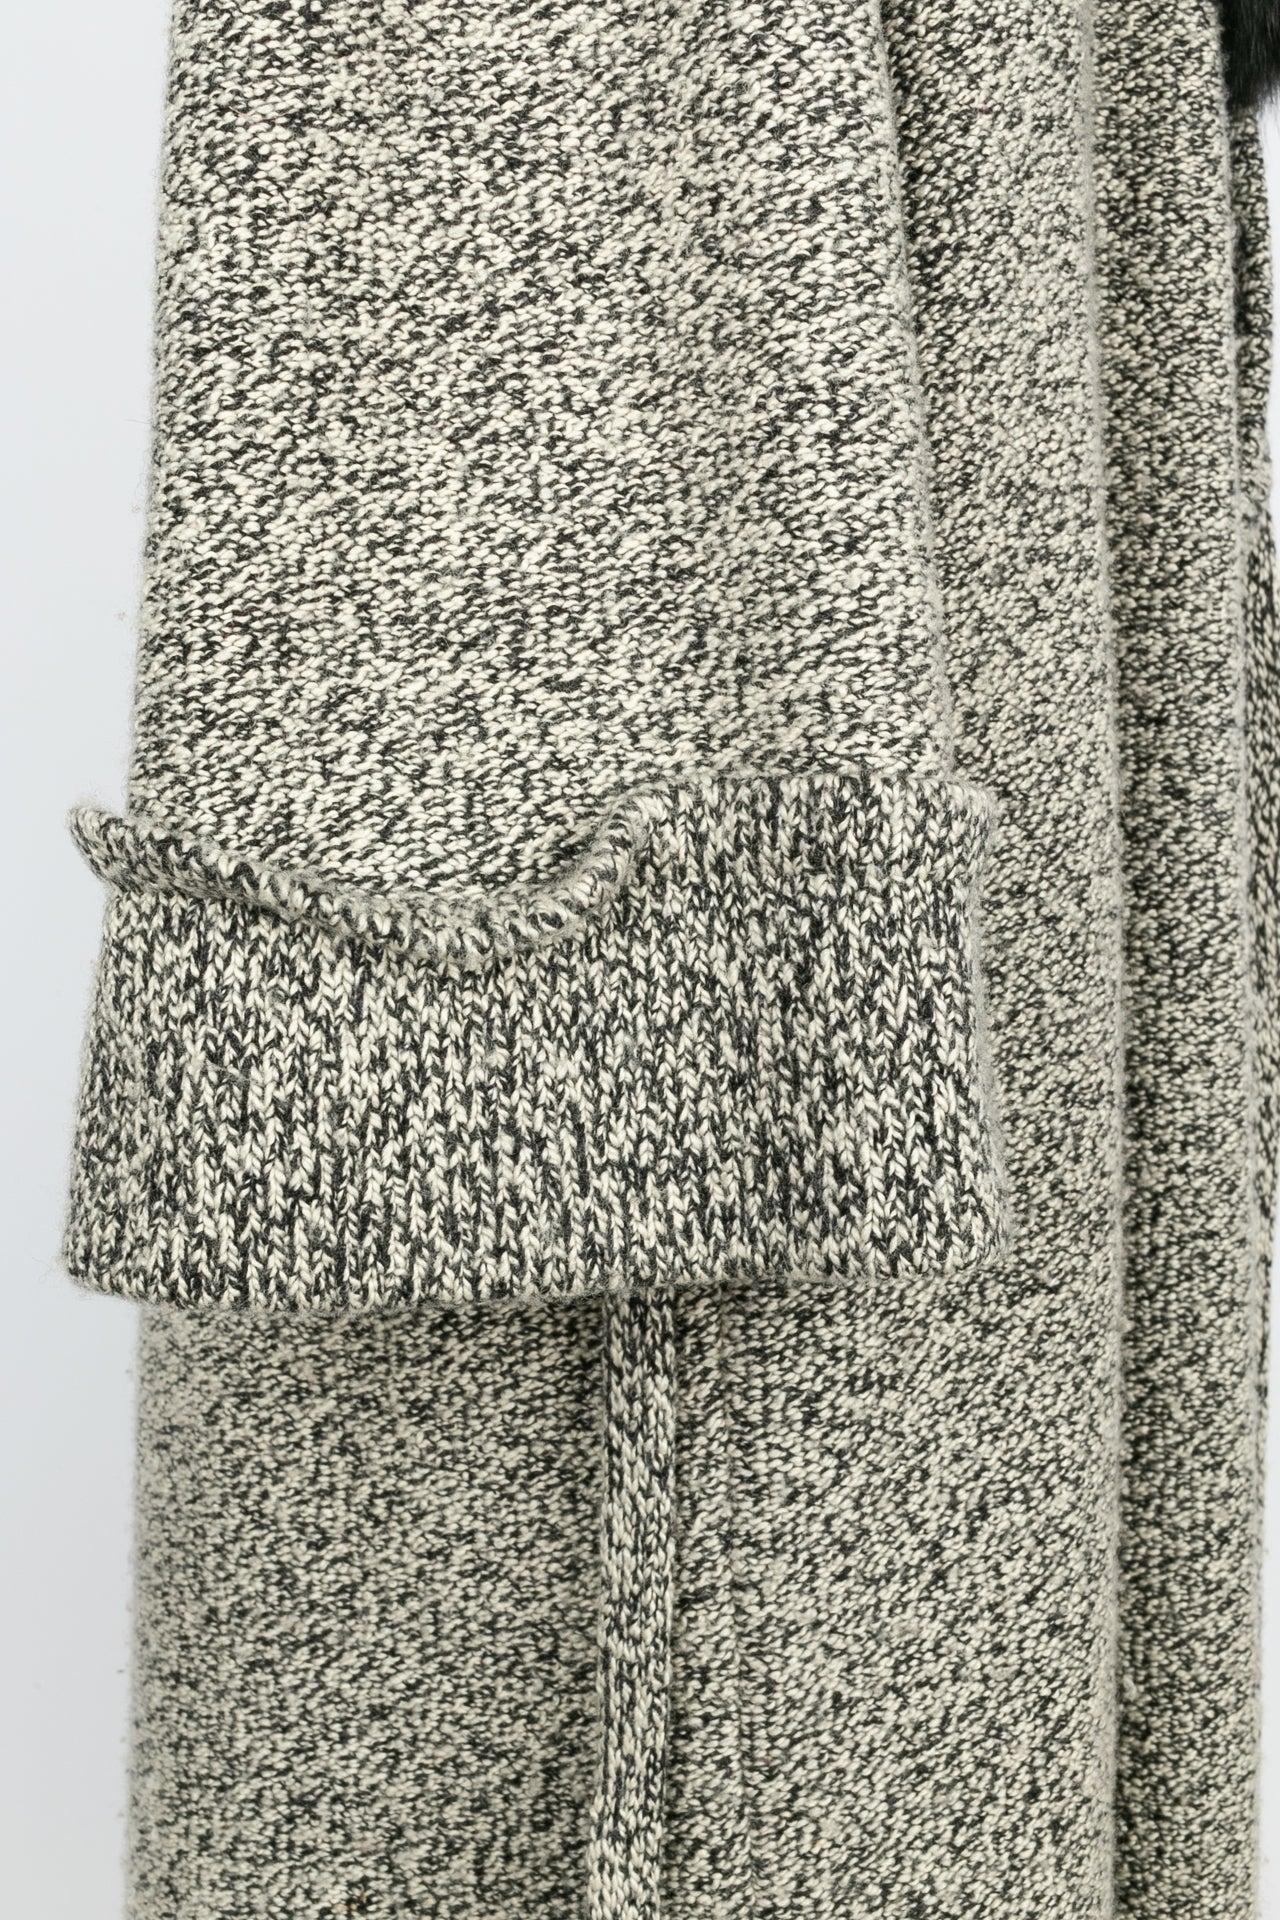 Jean-Louis Scherrer Long Coat in Black and Beige Wool, Size 40FR For Sale 4